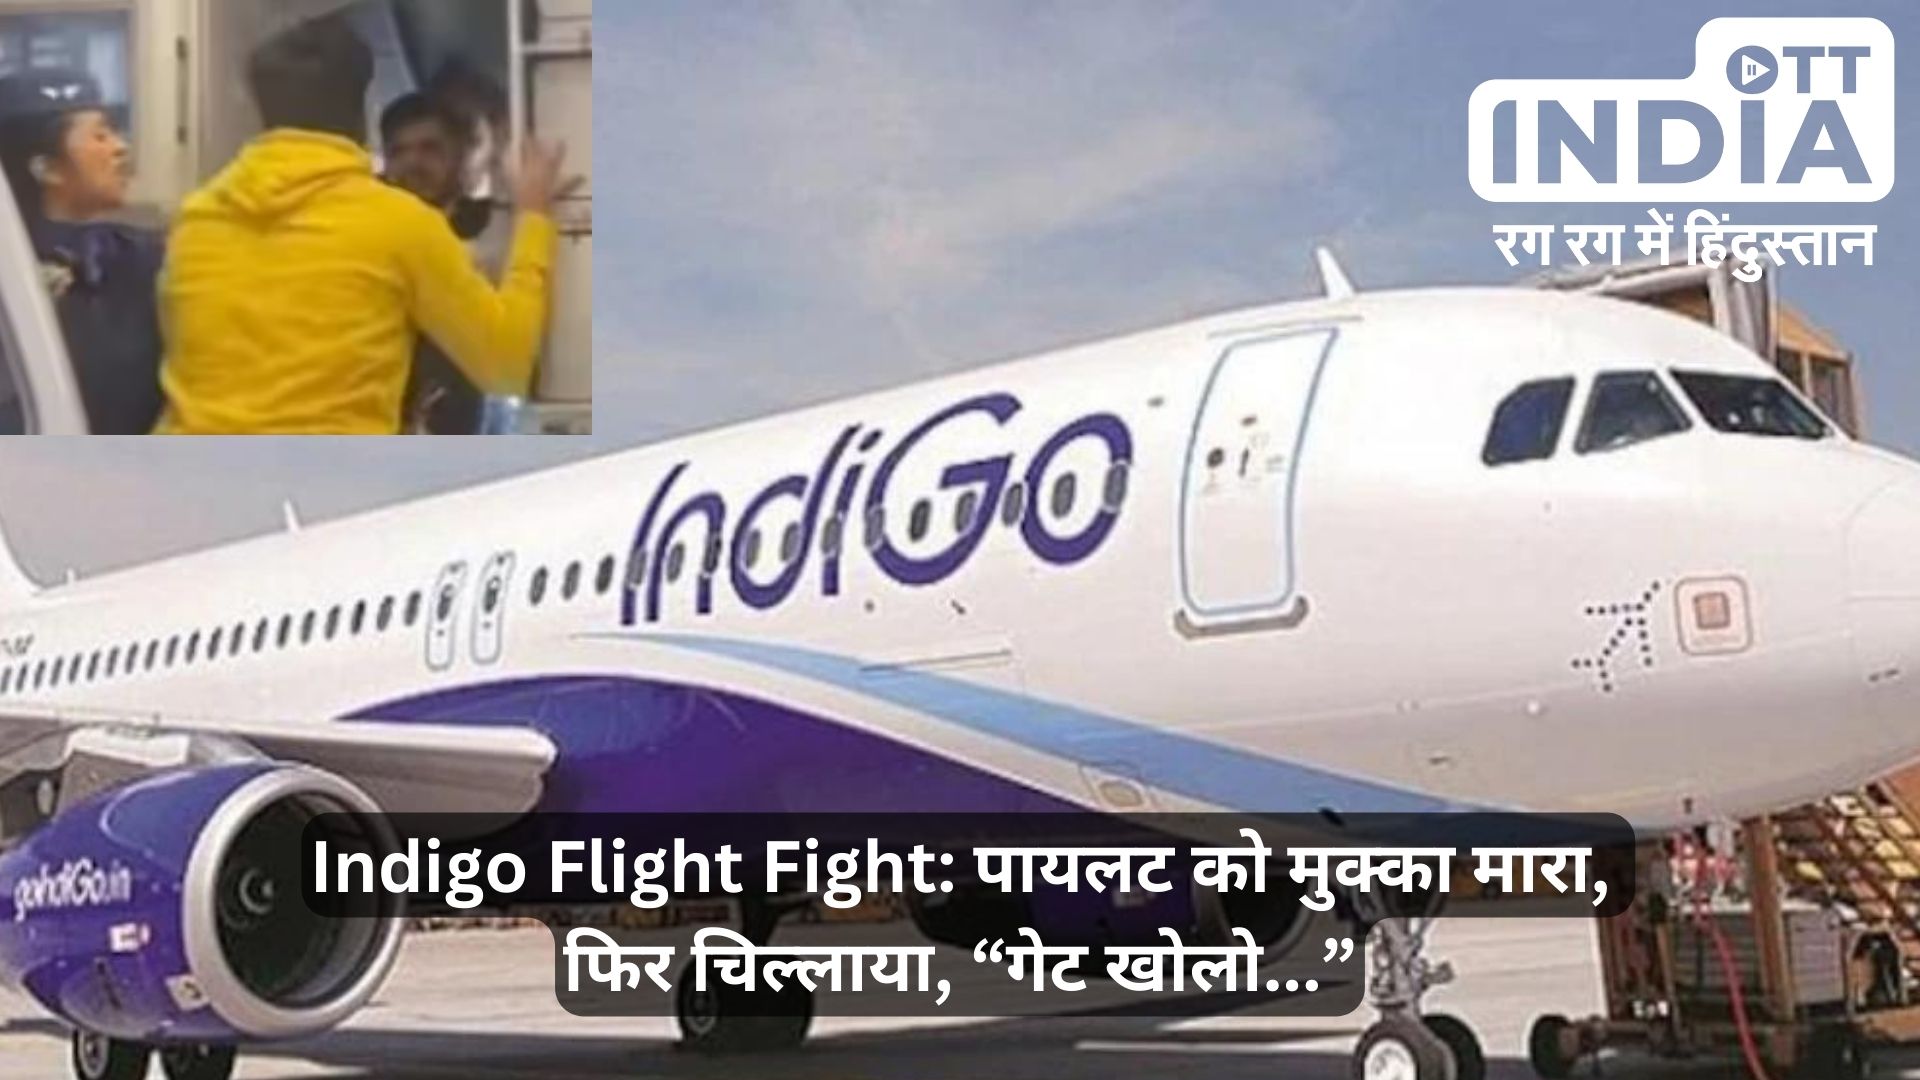 Indigo Flight Fight: देरी से उड़ान की वजह से इंडिगो के पायलट को खाना पड़ा मुक्का, यात्री का मुक्का मारते हुए वीडियो वायरल